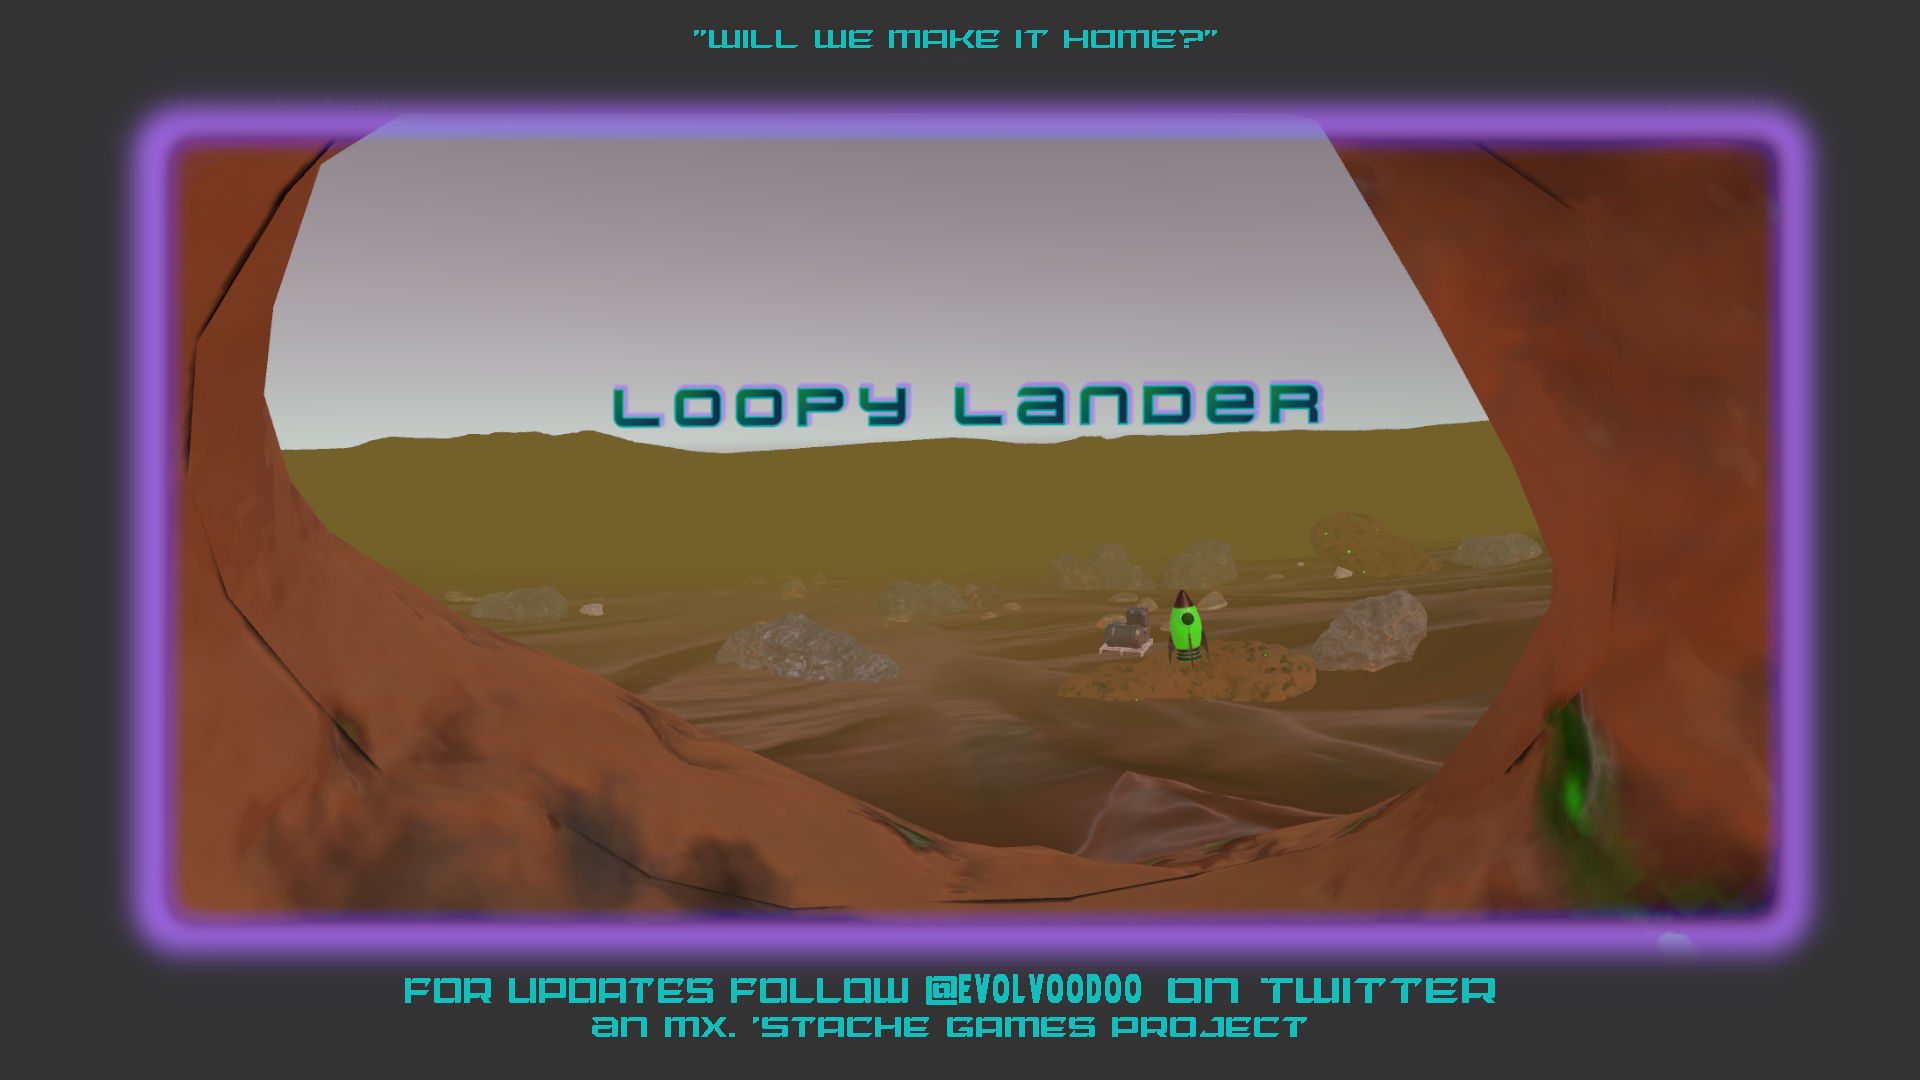 Loopy Lander